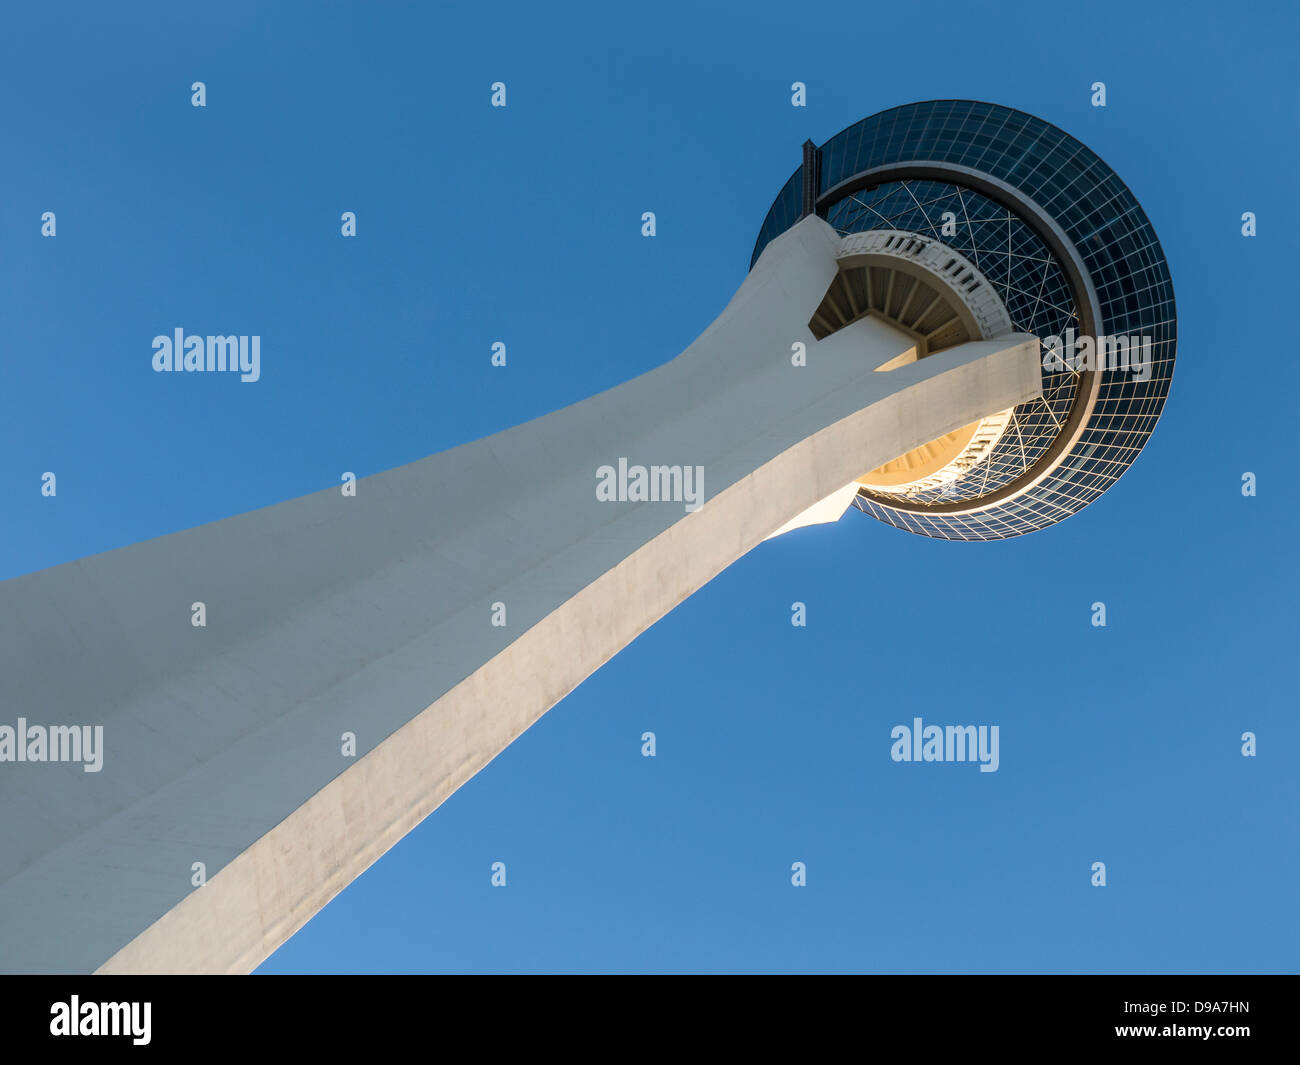 LAS VEGAS, NEVADA, Estados Unidos - 04 DE JUNIO de 2013: La torre de observación en el Stratosphere Casino Resort Hotel Foto de stock